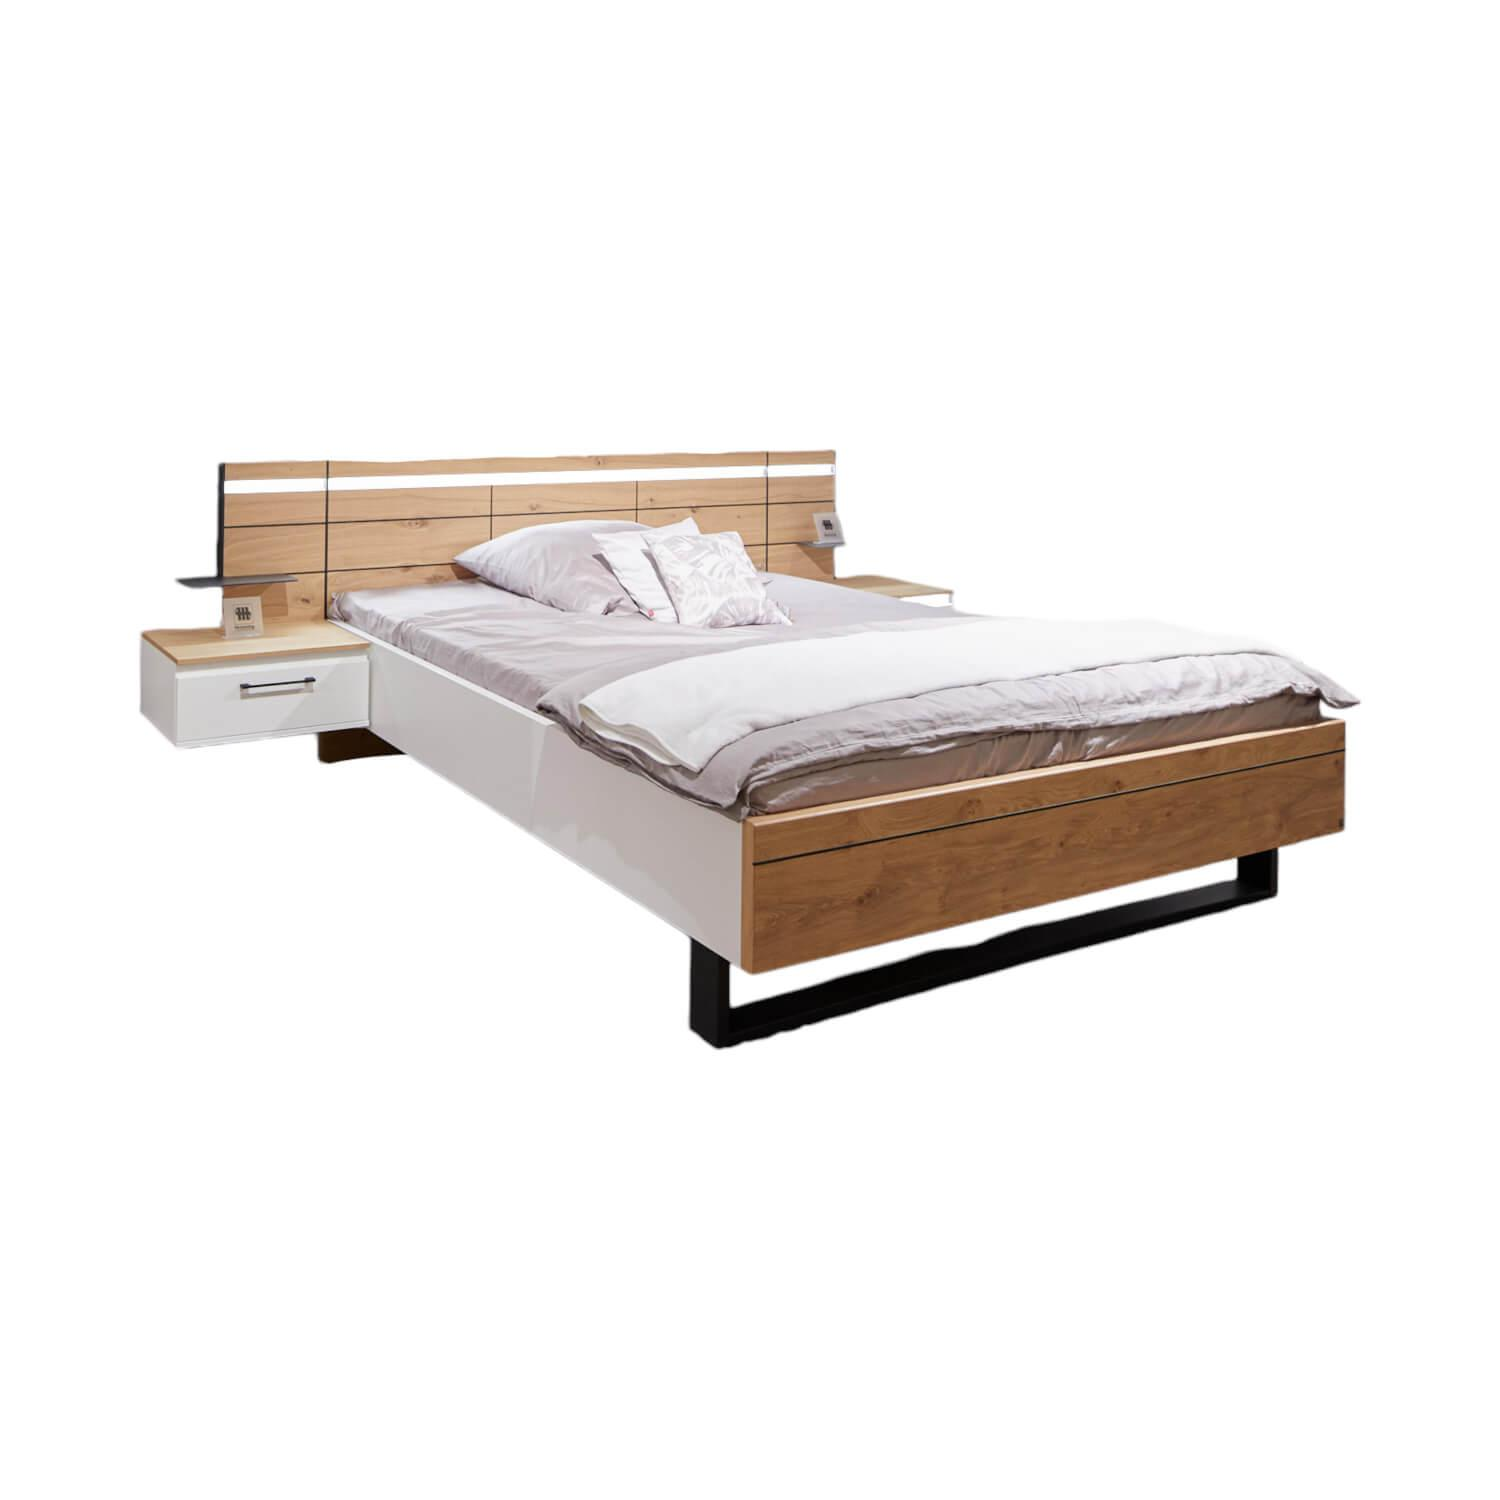 Schlafzimmer Madiva Lack Weiß Balkeneiche Echtholz Furniert Bauchbinde Mit LED Beleuchtung Ohne Matratze Und Lattenrost